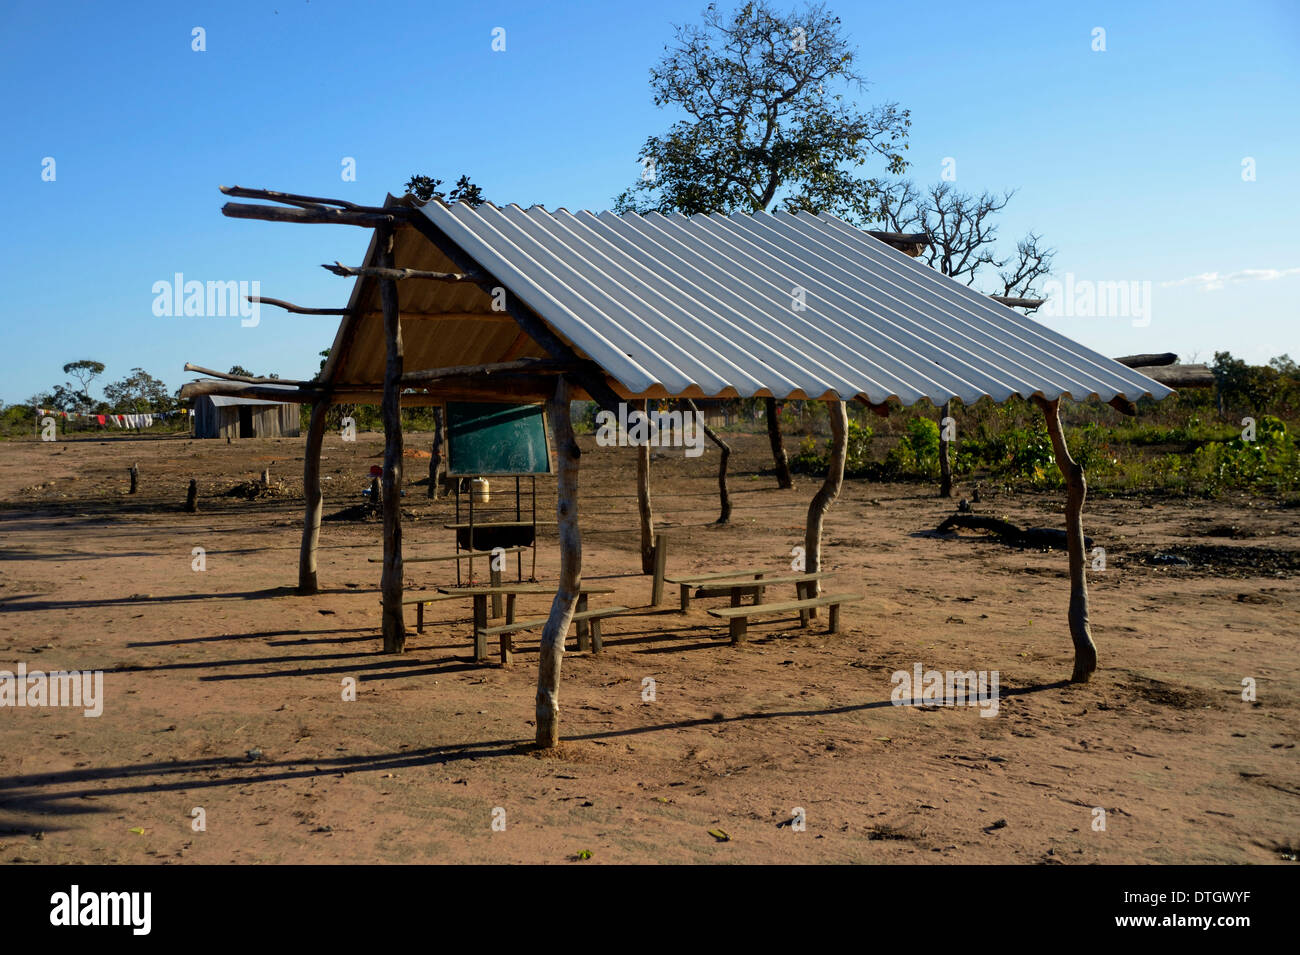 School in the village of the Xavantes people, Nova Vida near the mission of Sangradouro, Primavera do Leste, Mato Grosso, Brazil Stock Photo